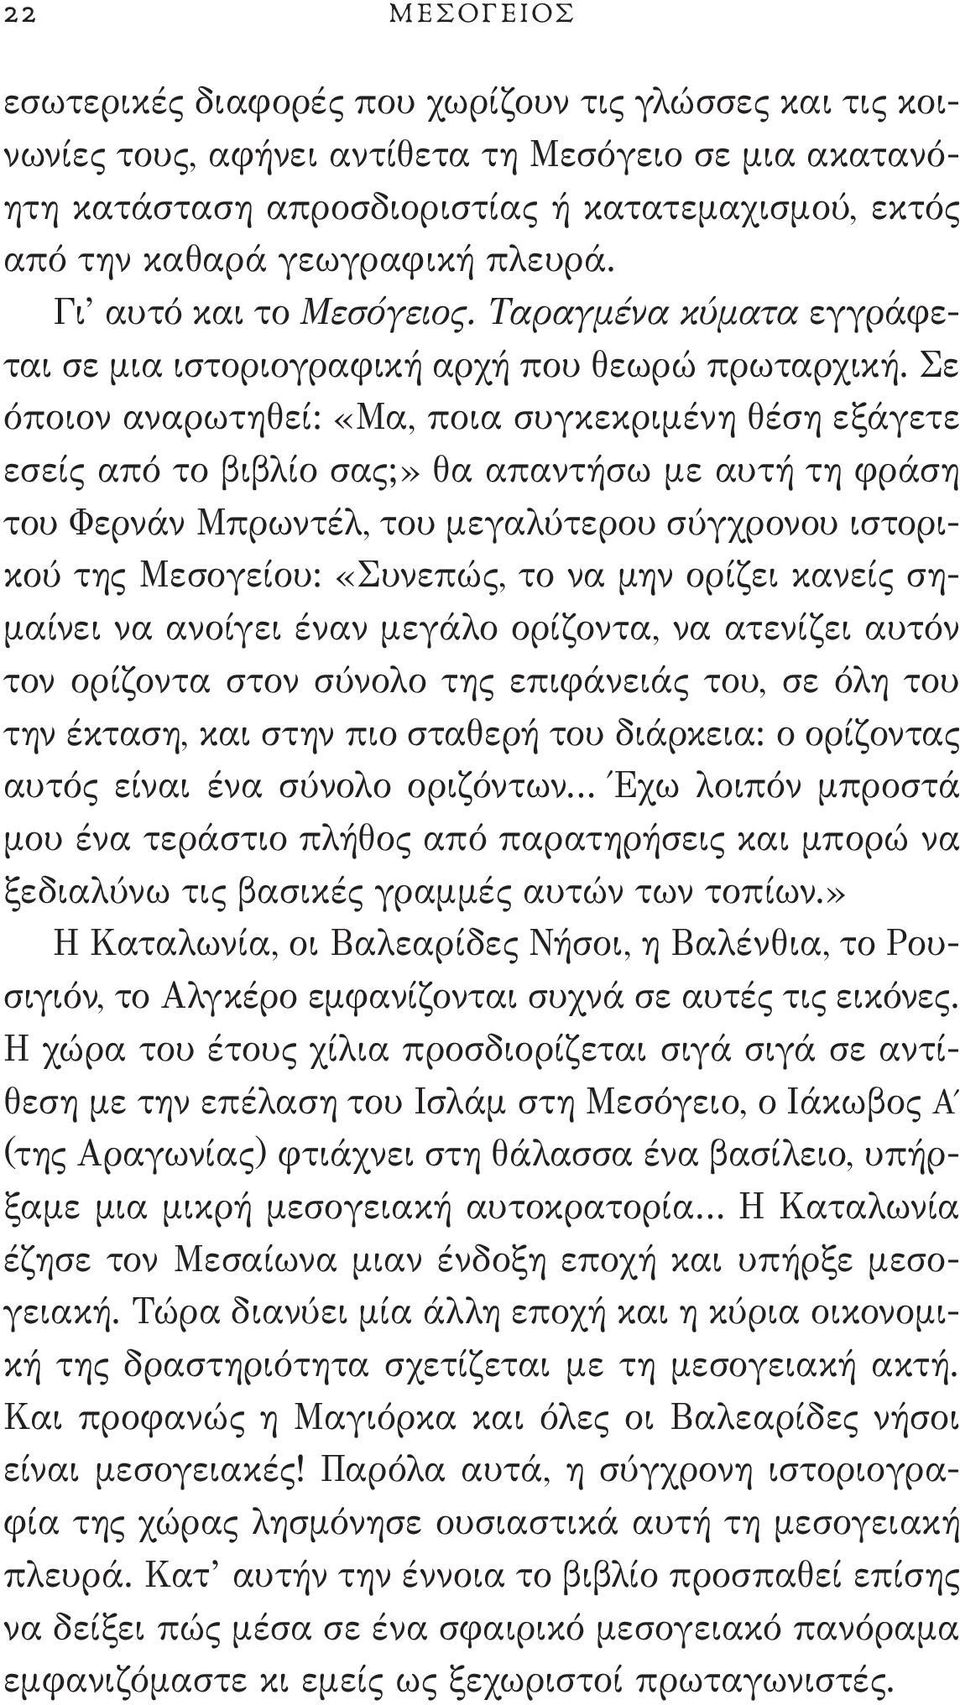 Σε όποιον αναρωτηθεί: «Μα, ποια συγκεκριμένη θέση εξάγετε εσείς από το βιβλίο σας;» θα απαντήσω με αυτή τη φράση του Φερνάν Μπρωντέλ, του μεγαλύτερου σύγχρονου ιστορικού της Μεσογείου: «Συνεπώς, το